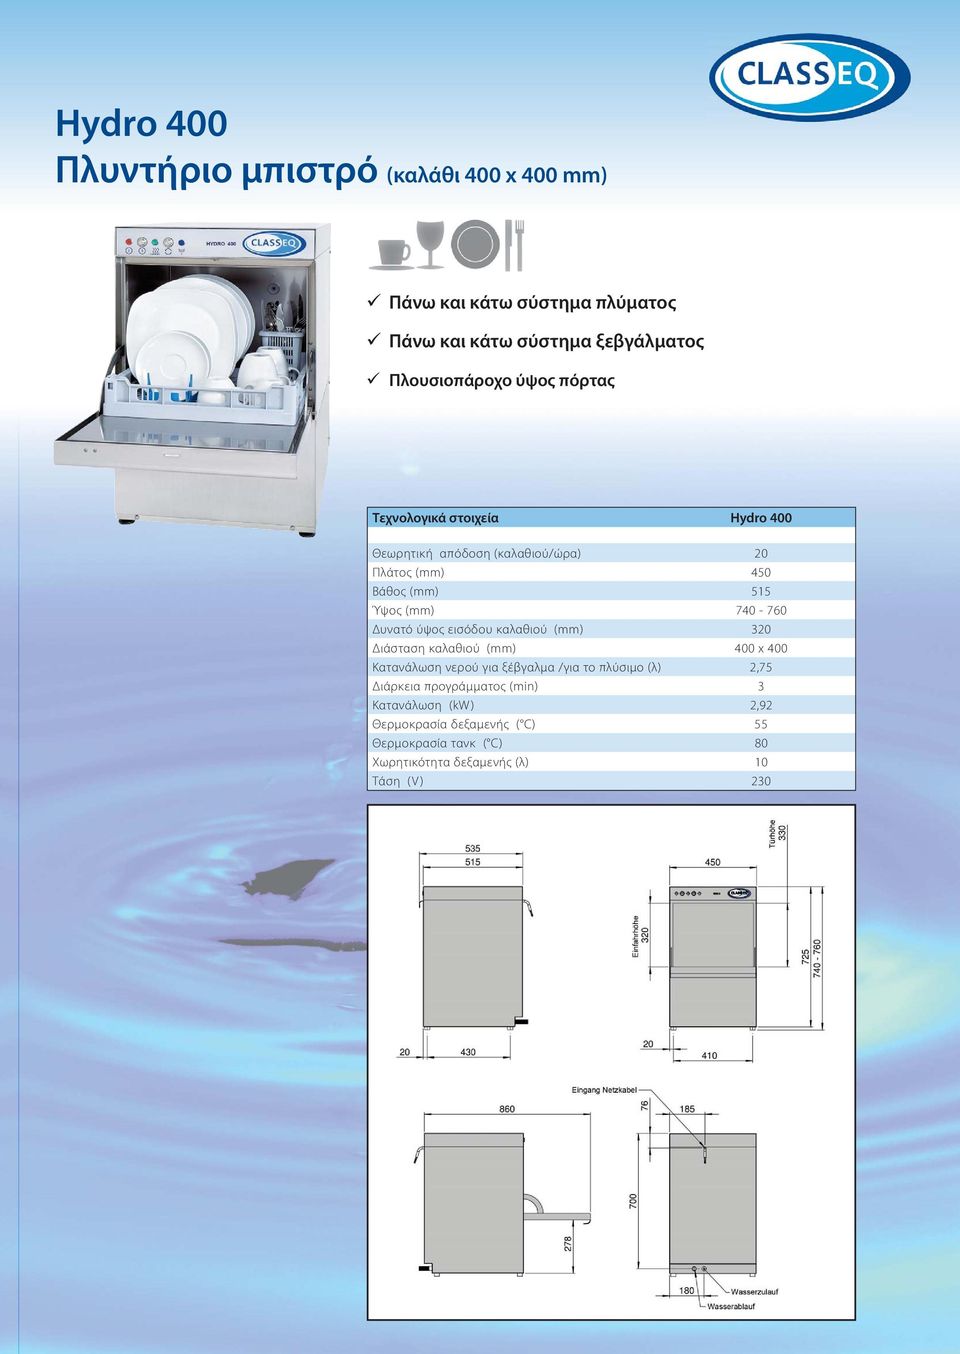 Δυνατό ύψος εισόδου καλαθιού (mm) 320 Διάσταση καλαθιού (mm) 400 x 400 Κατανάλωση νερού για ξέβγαλμα /για το πλύσιμο (λ) 2,75